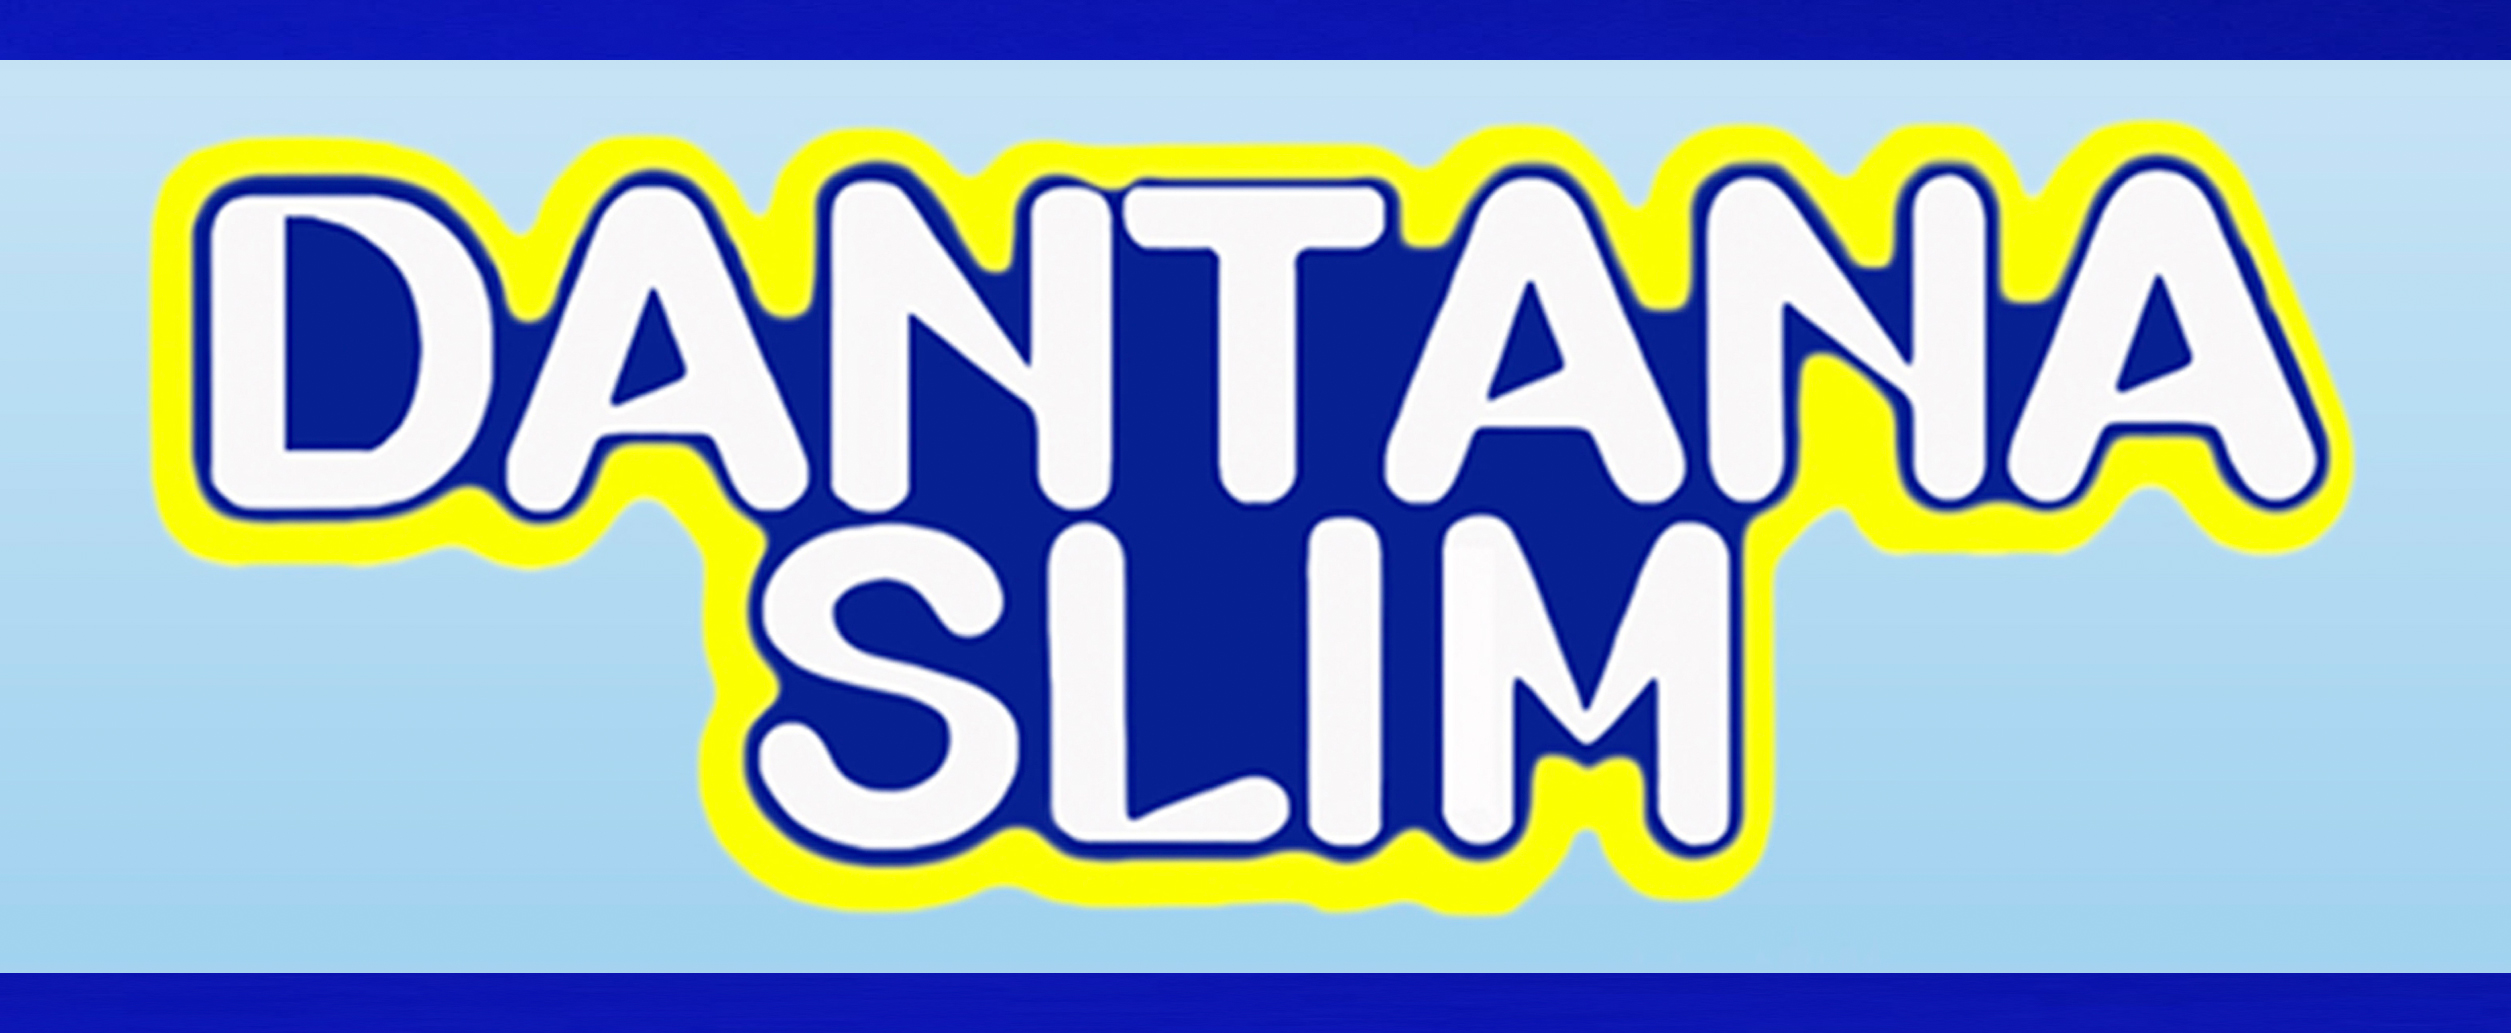 Dantana Slim